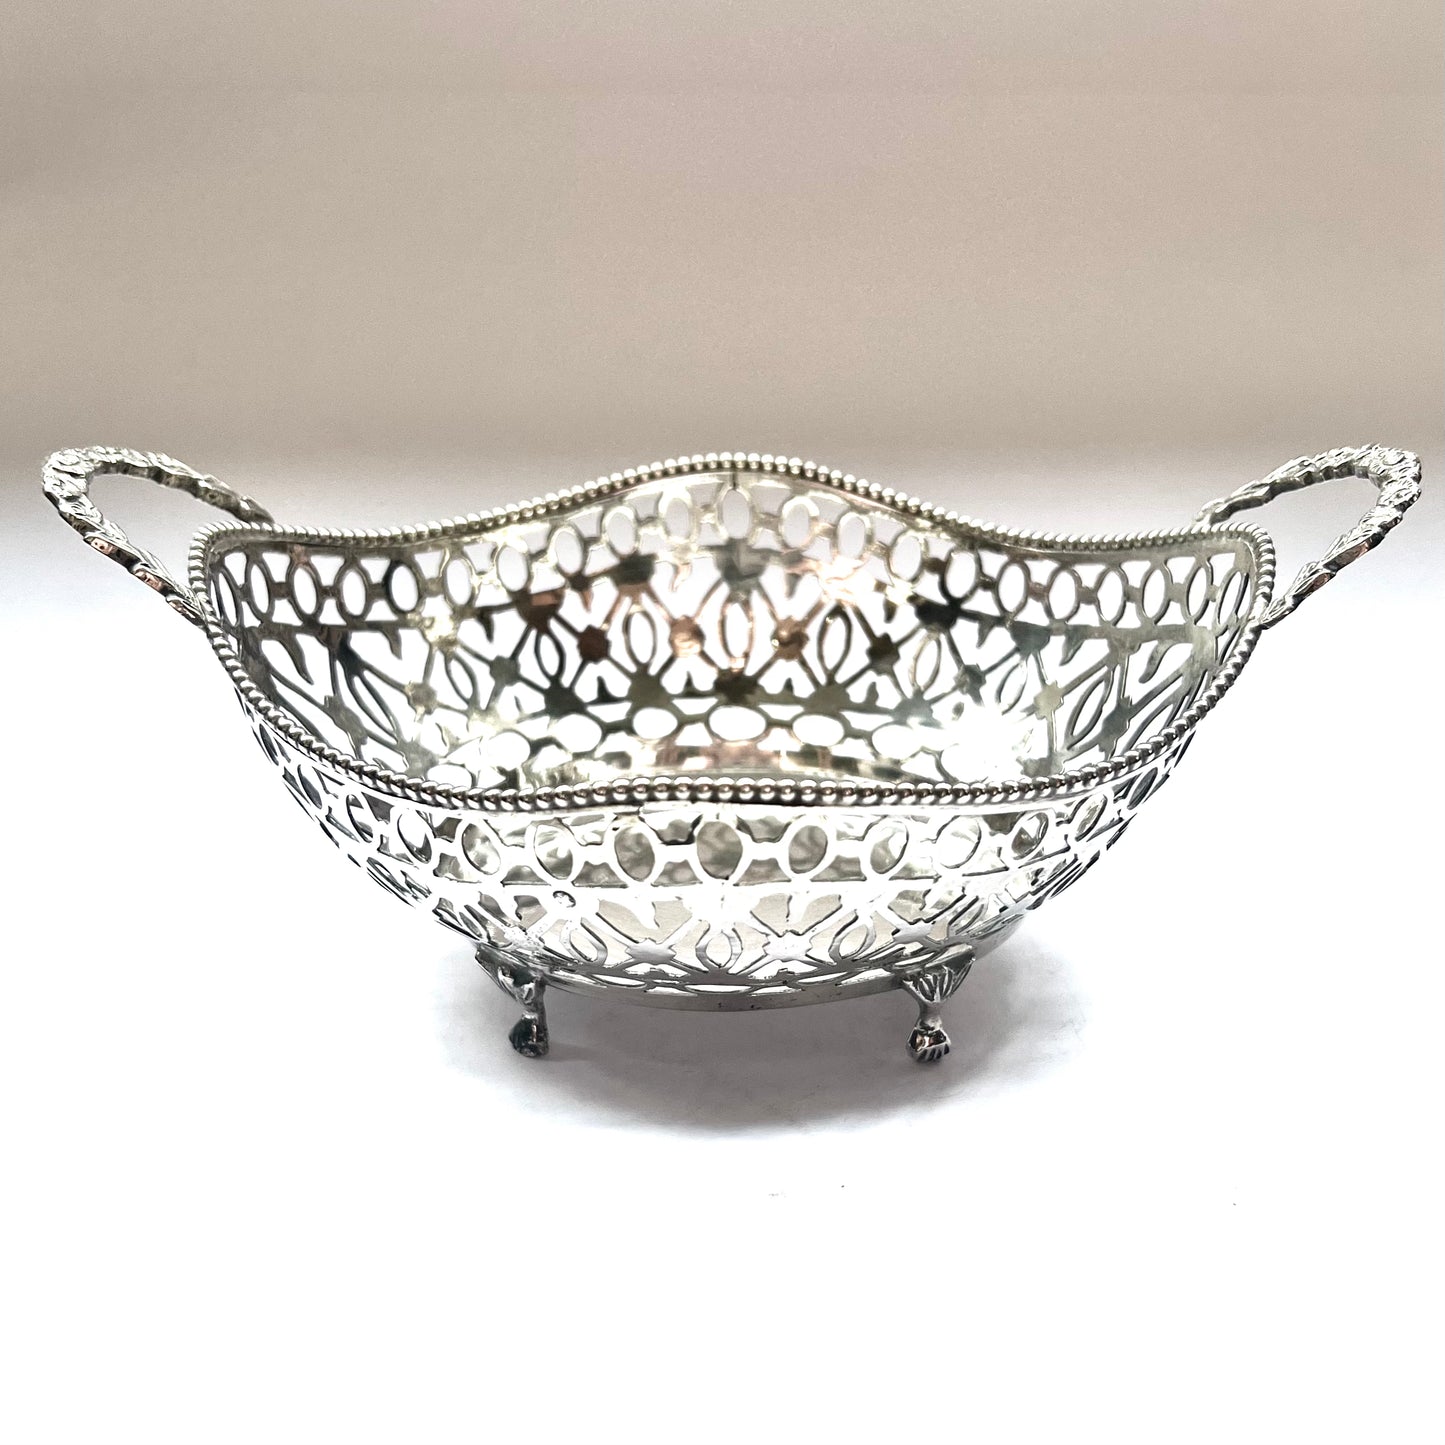 Antique Dutch .833 silver basket with pierced Art Nouveau design from 1914